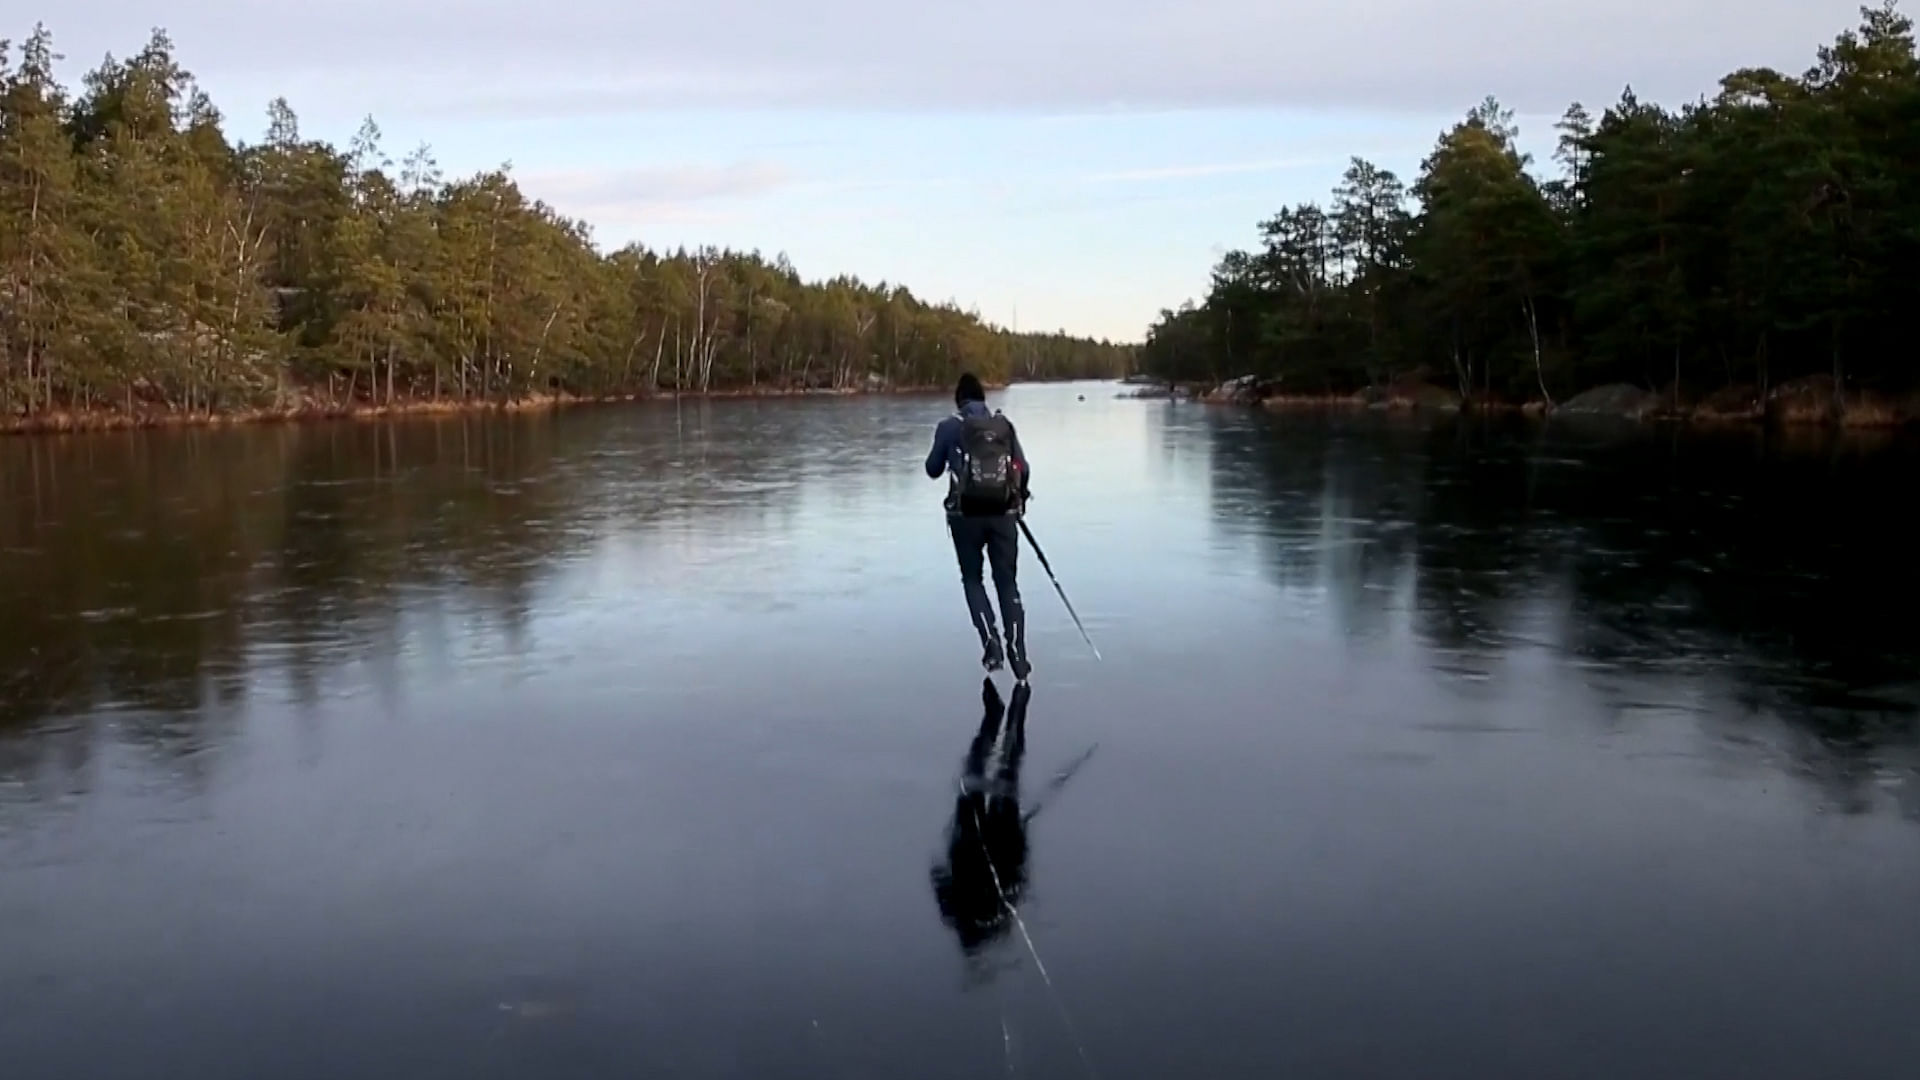 Marten Ajne slides over a frozen lake In Sweden.